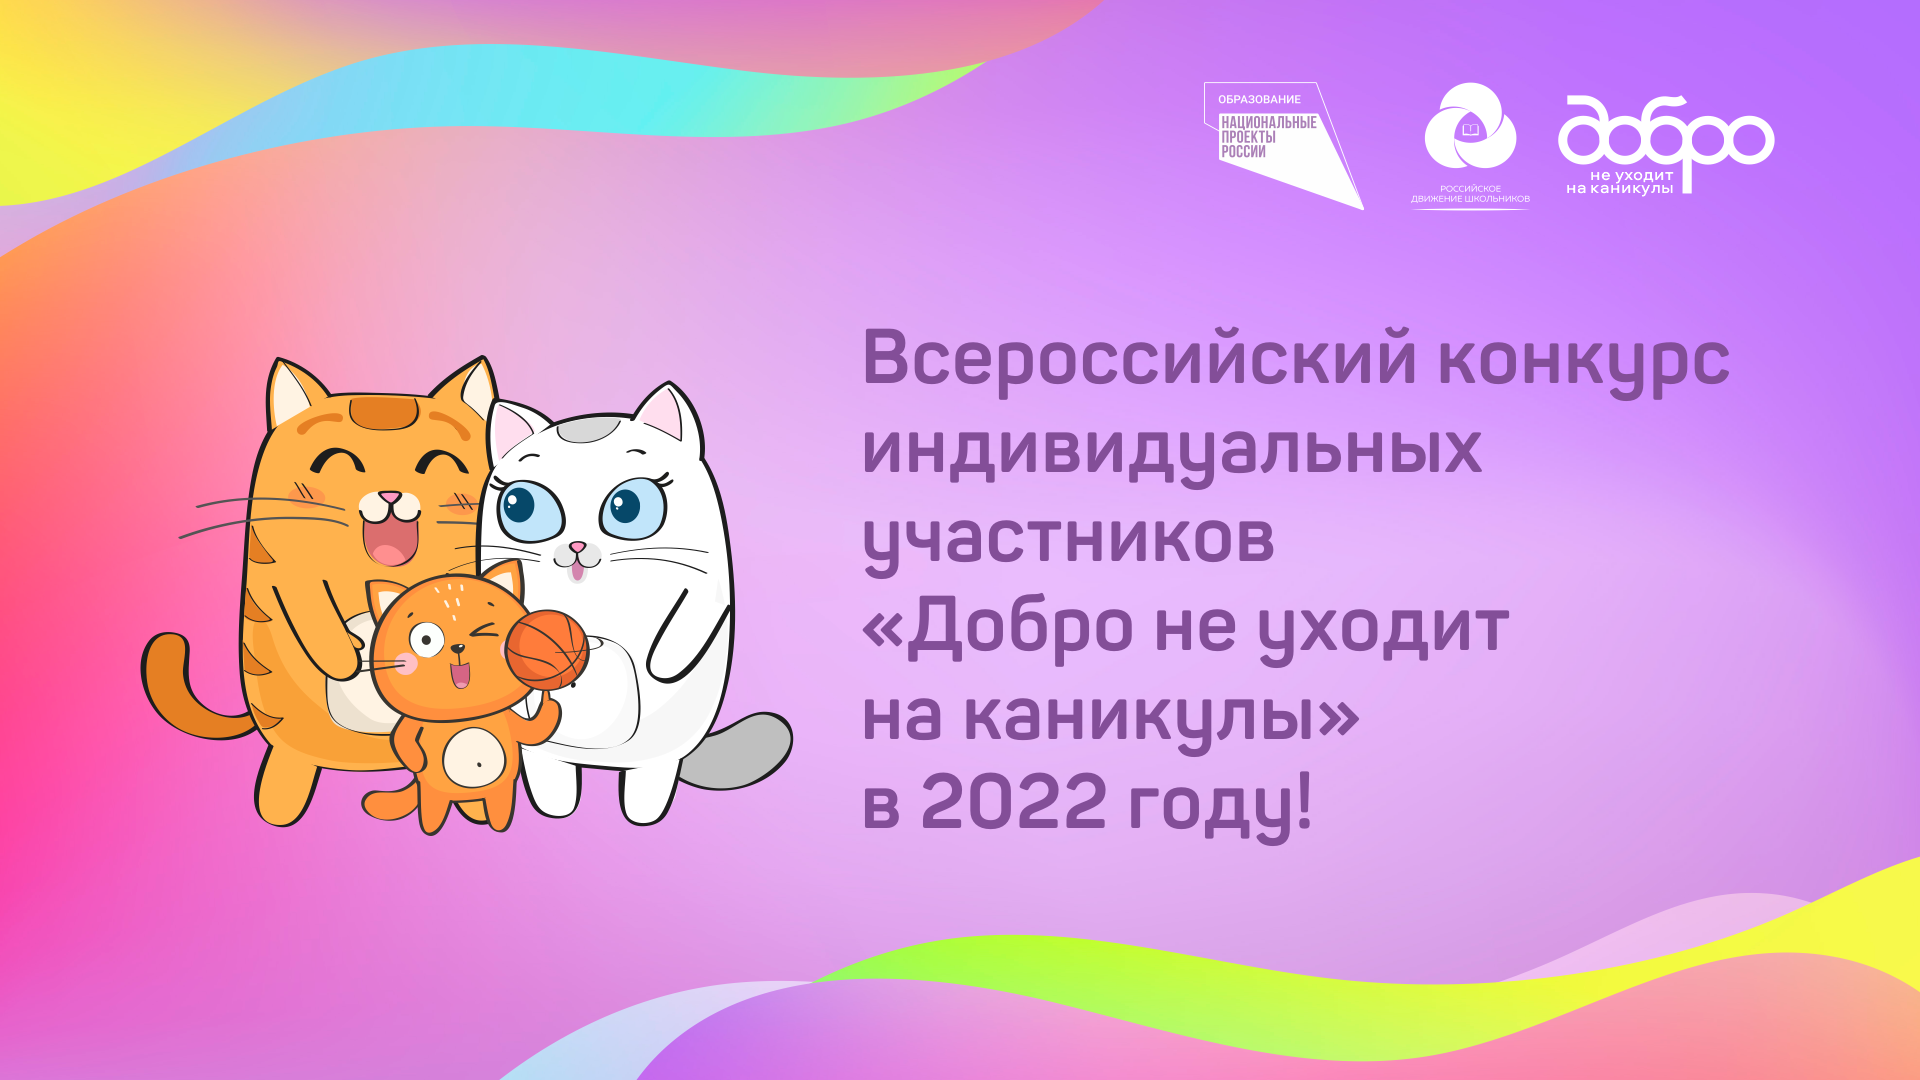 Тысячи юных добровольцев каждый день меняют мир к лучшему, участвуя в юбилейном Всероссийском конкурсе  «Добро не уходит на каникулы»